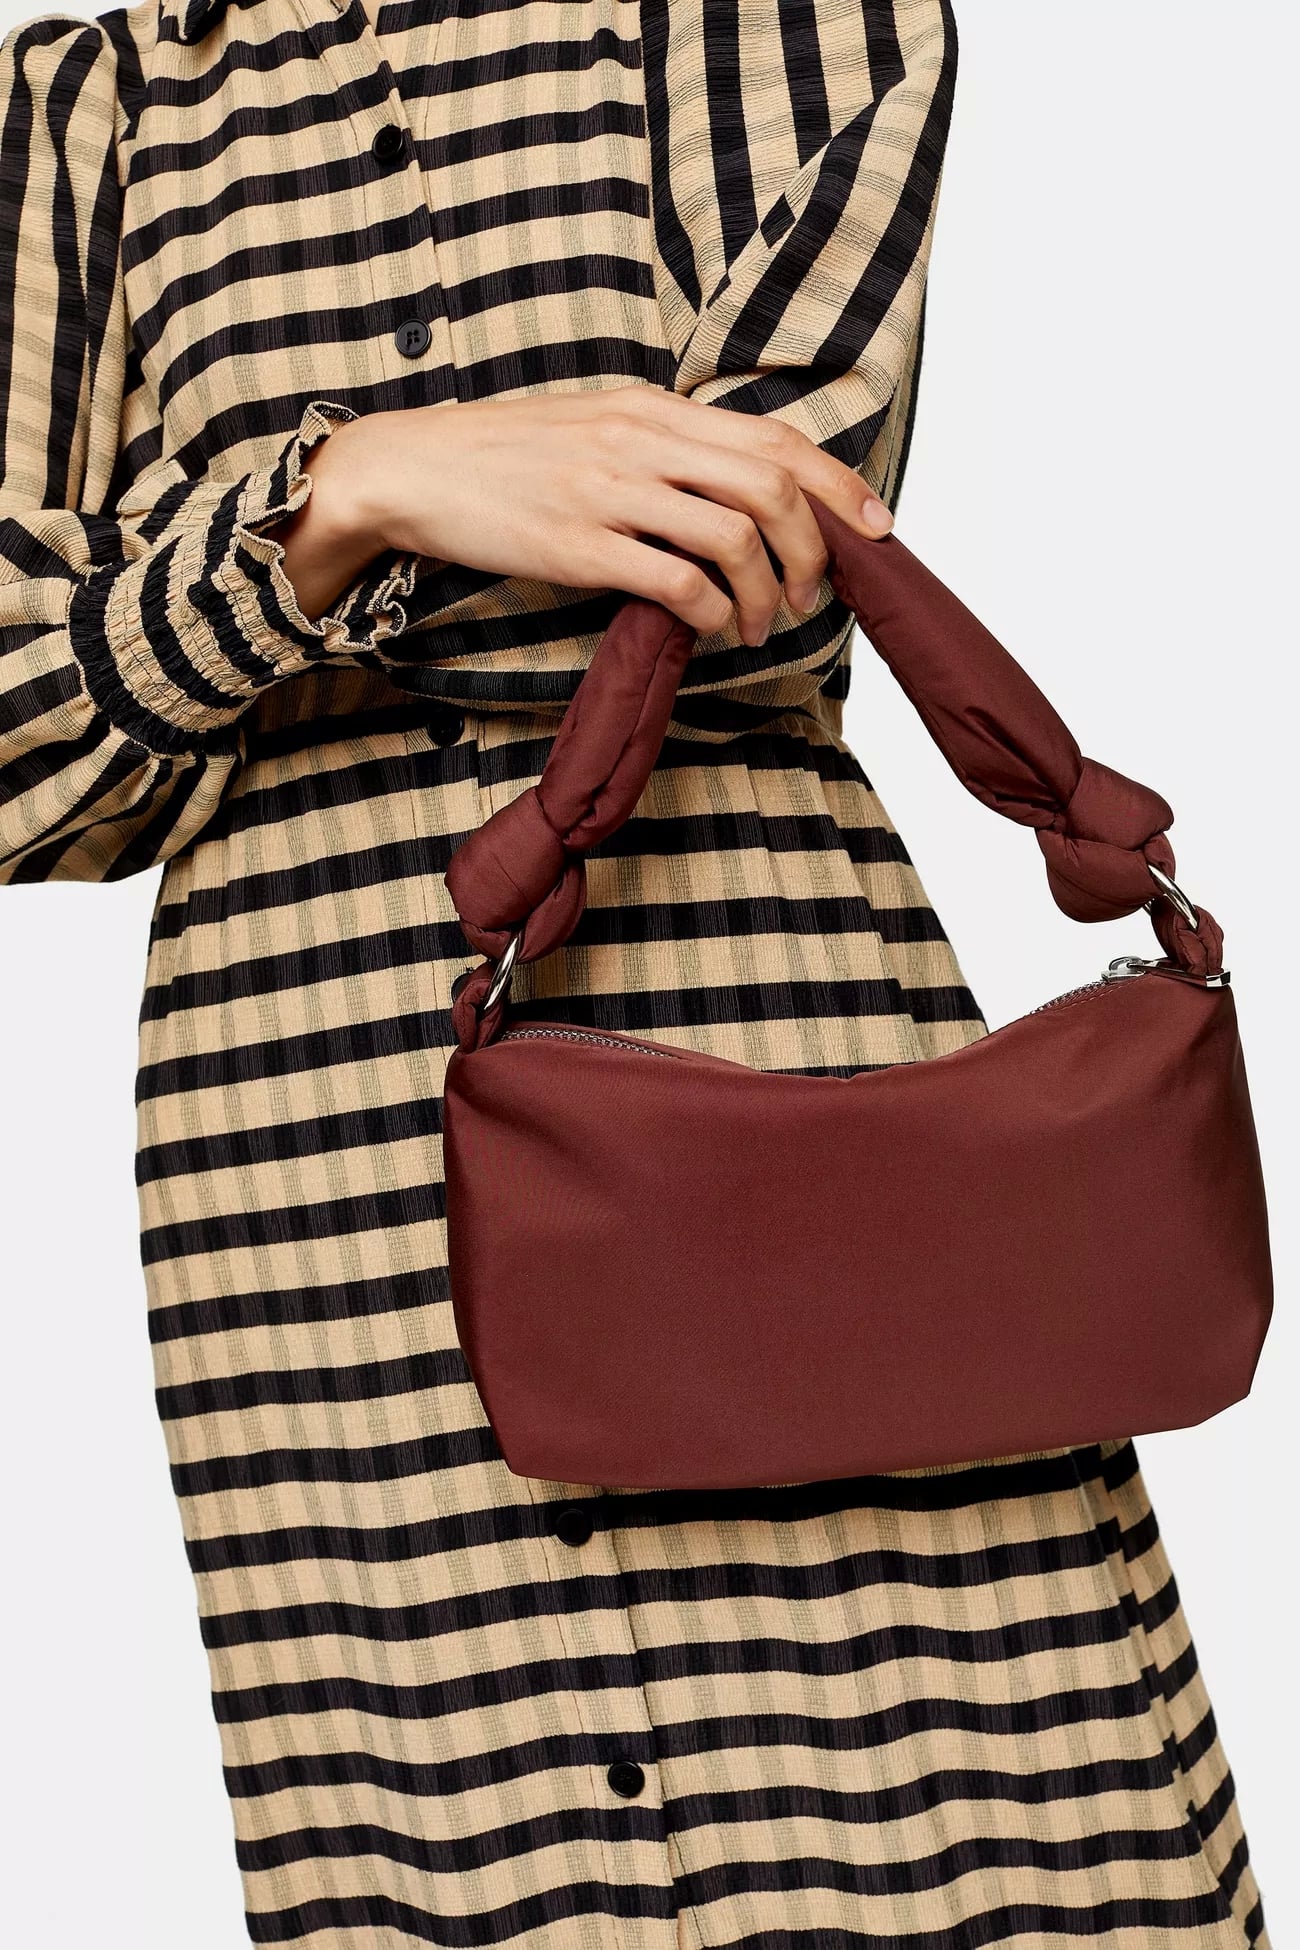 The Prada Nylon Bag Trend Is Back in 2020